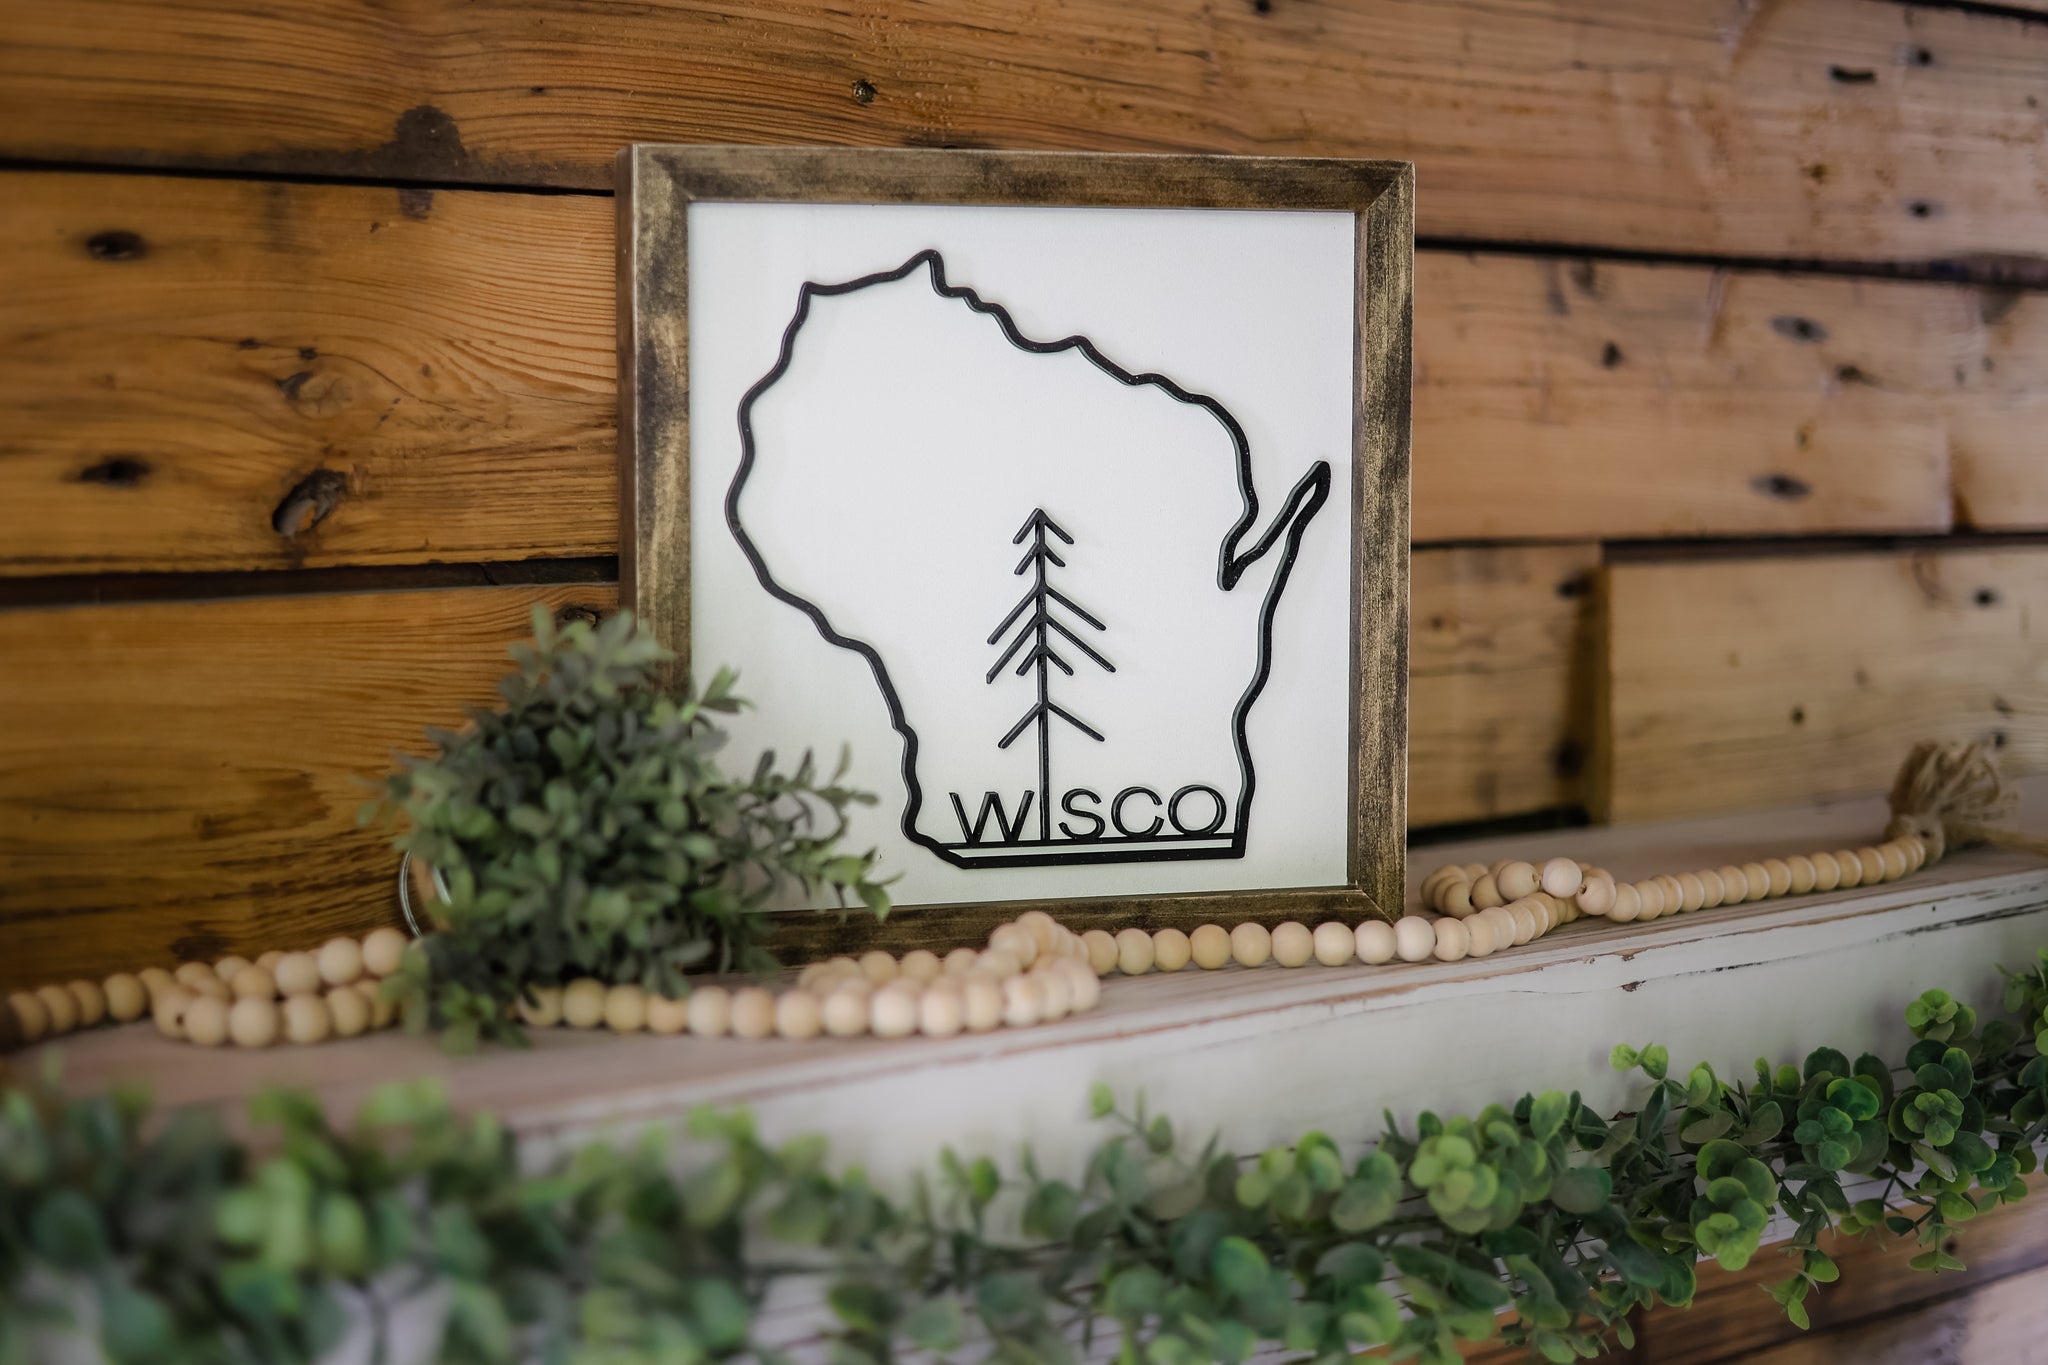 Wisco Sign | Wisconsin Art | Wisconsin Home Sign | Wisconsin Home Decor | Wisconsin Gifts